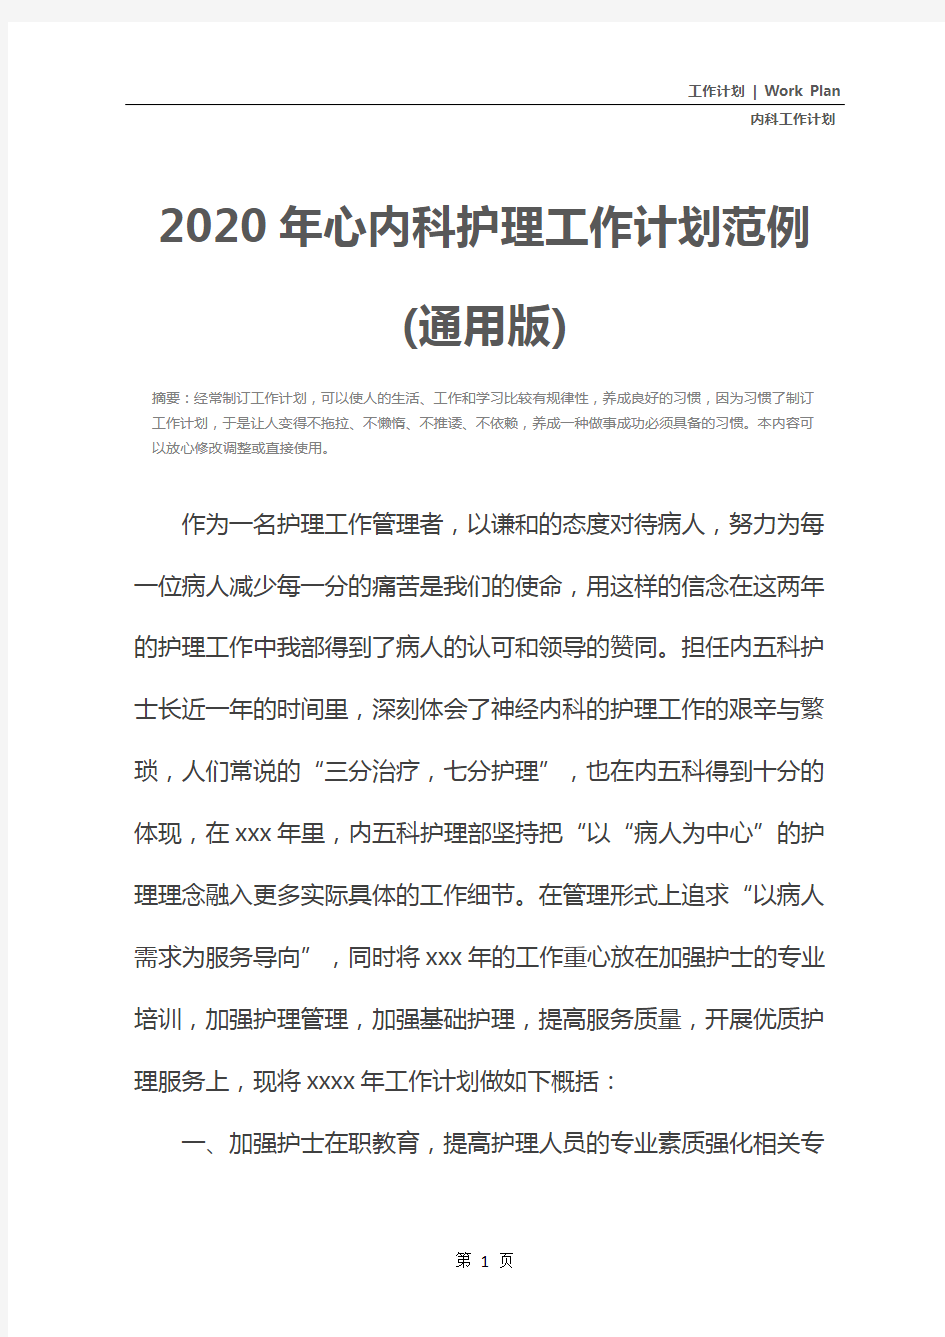 2020年心内科护理工作计划范例(通用版)